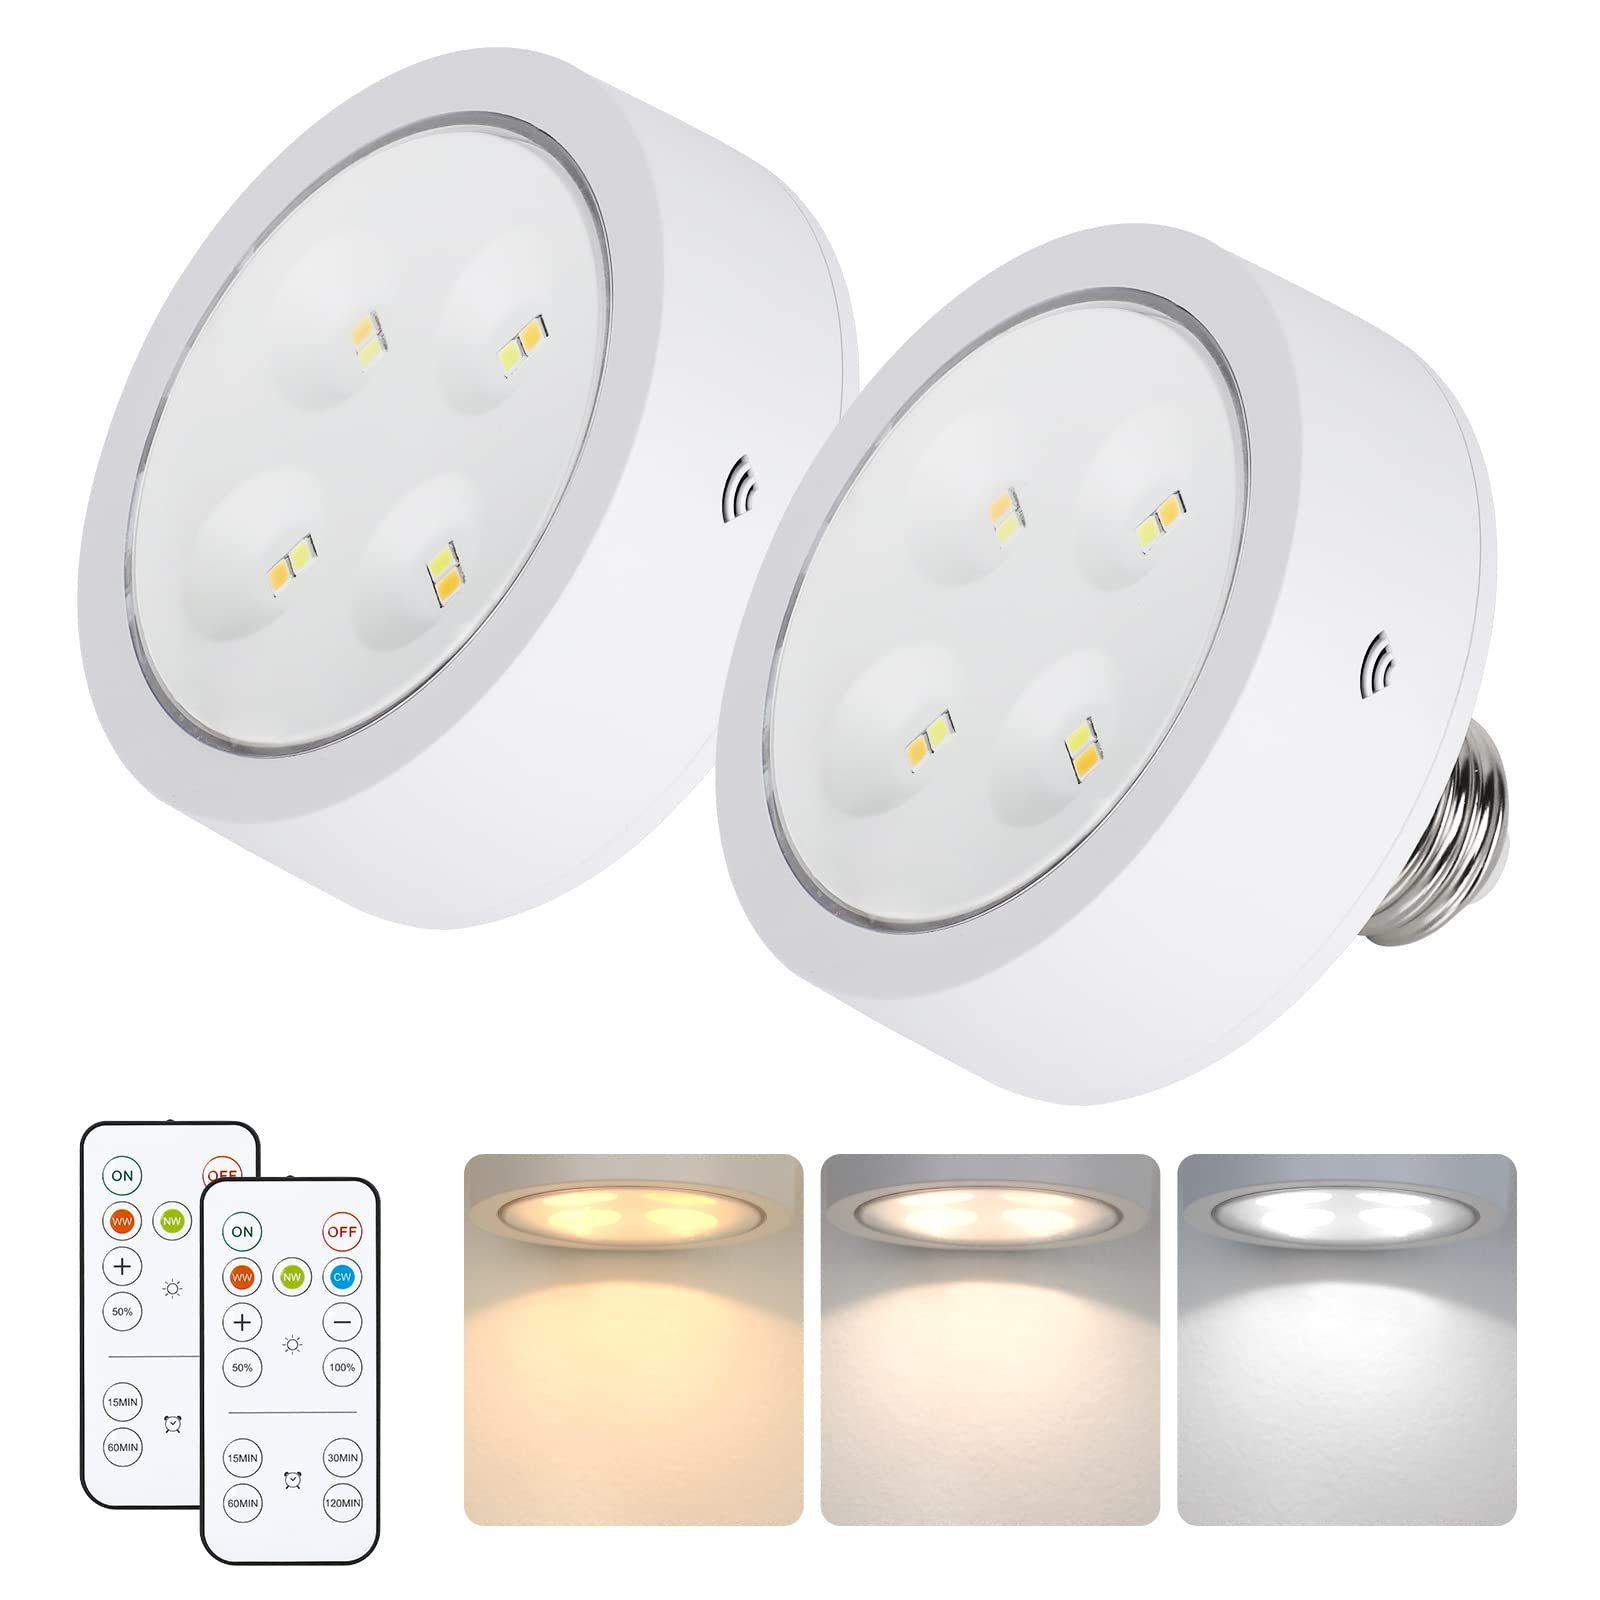 Sunicol LED-Leuchtmittel LED Spot Glühbirnen Küche Keller Puck Lichter mit Dimmbar Timer, 1 St., Nachtlicht E26/E27 Spot Lampe Birne mit Fernbedienung RGB/3 Farbe 3 Farbtemperatur-A